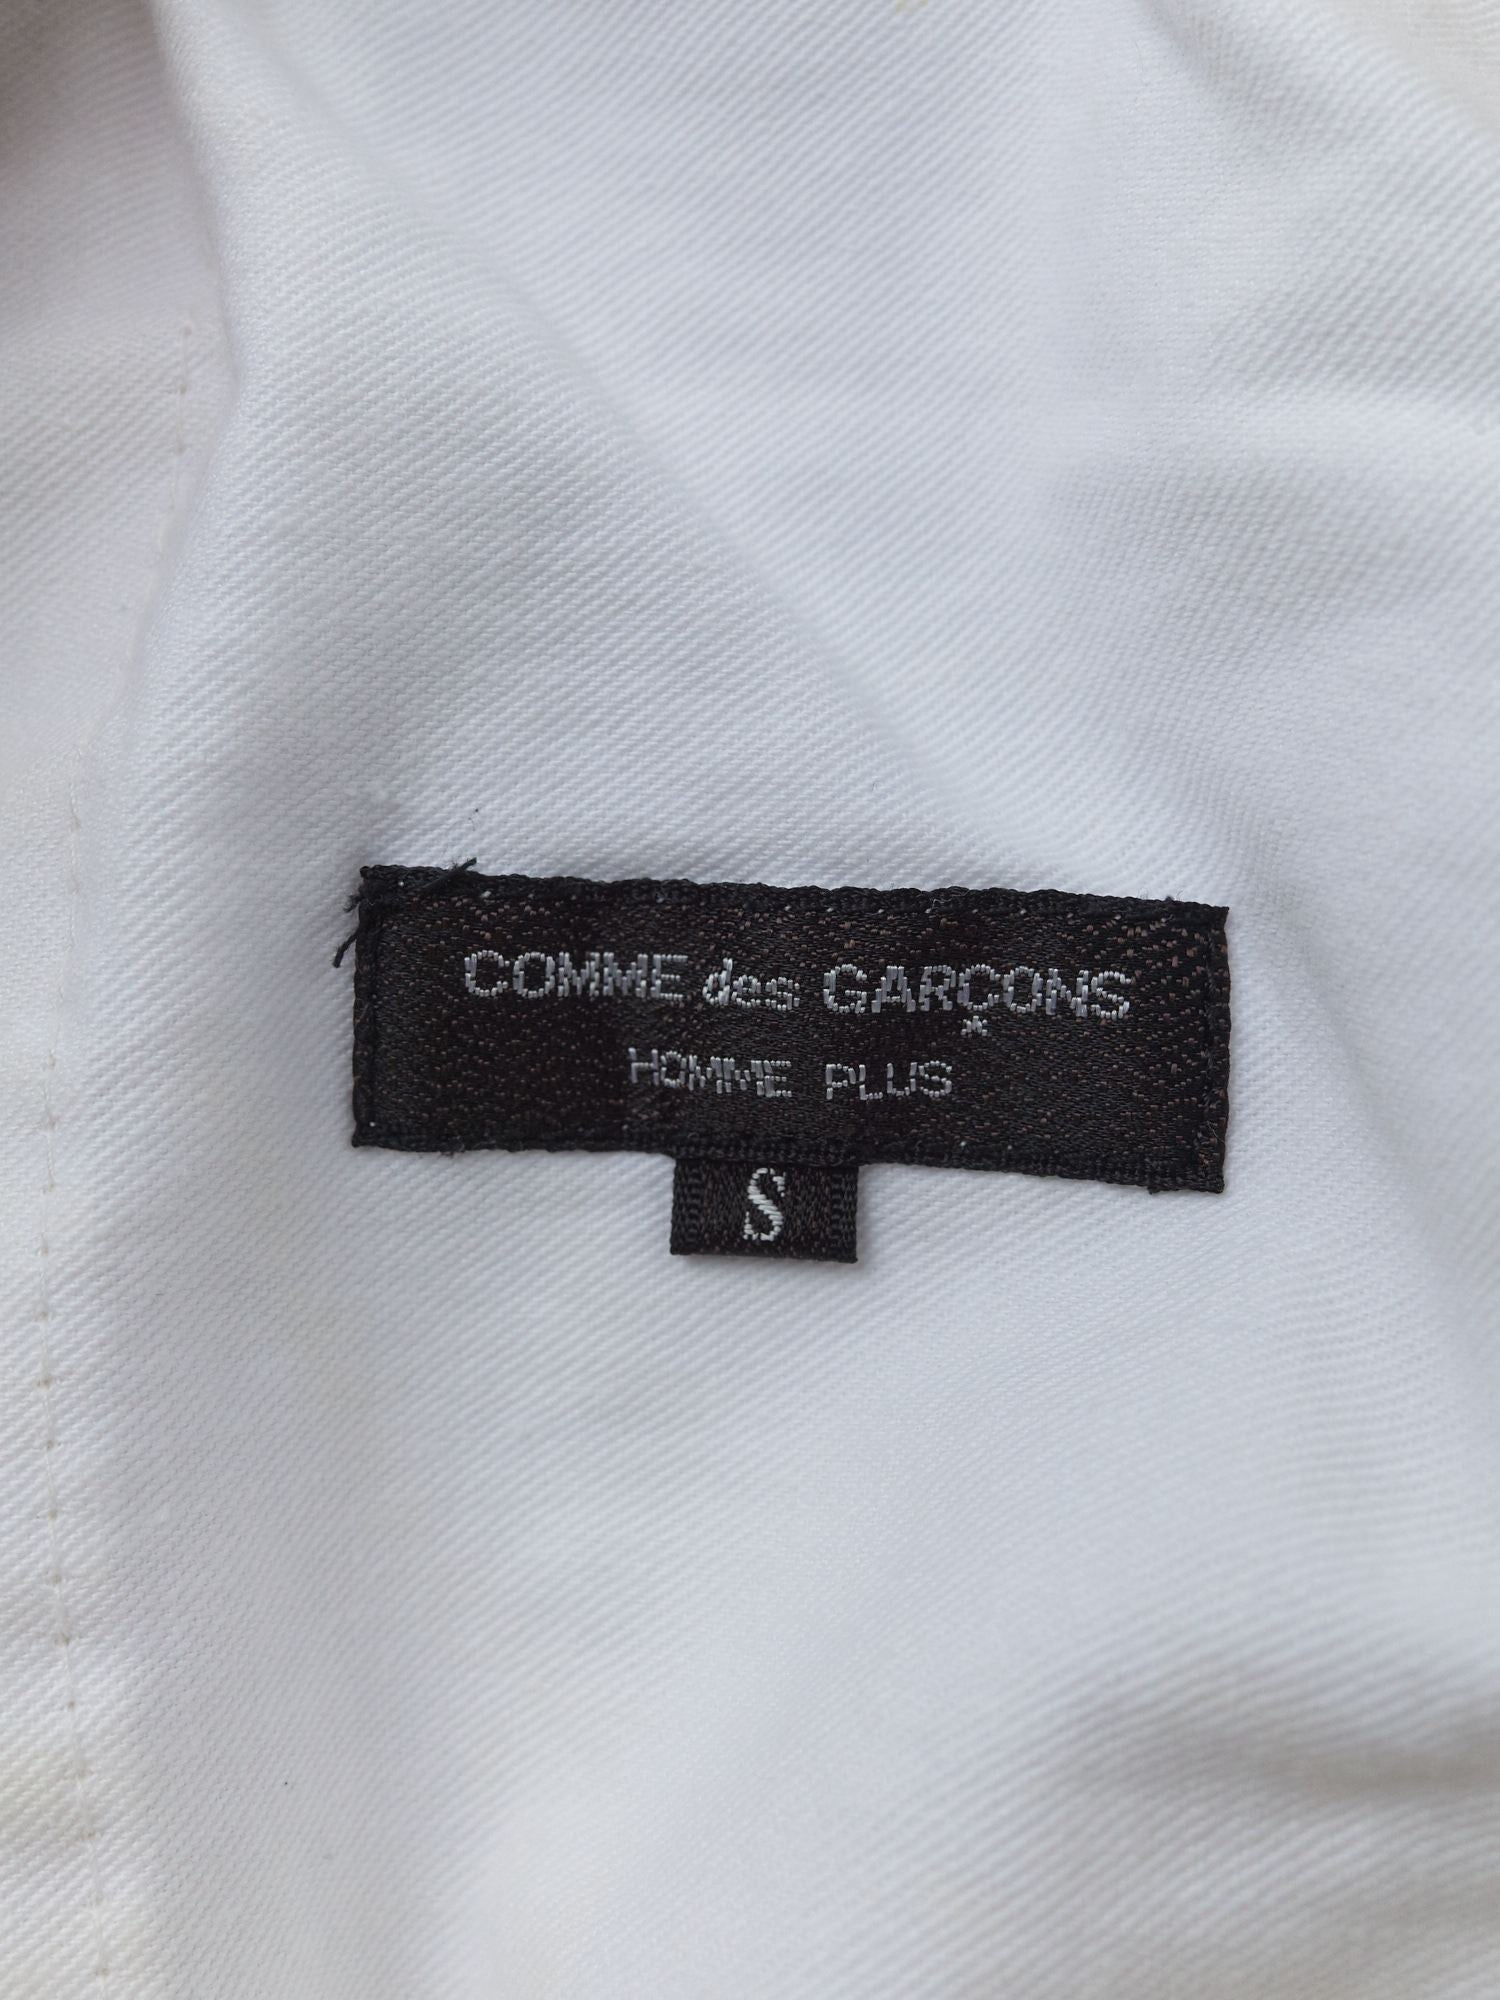 Comme des Garcons Homme Plus 1997 off white silk elastic waist trousers - mens S